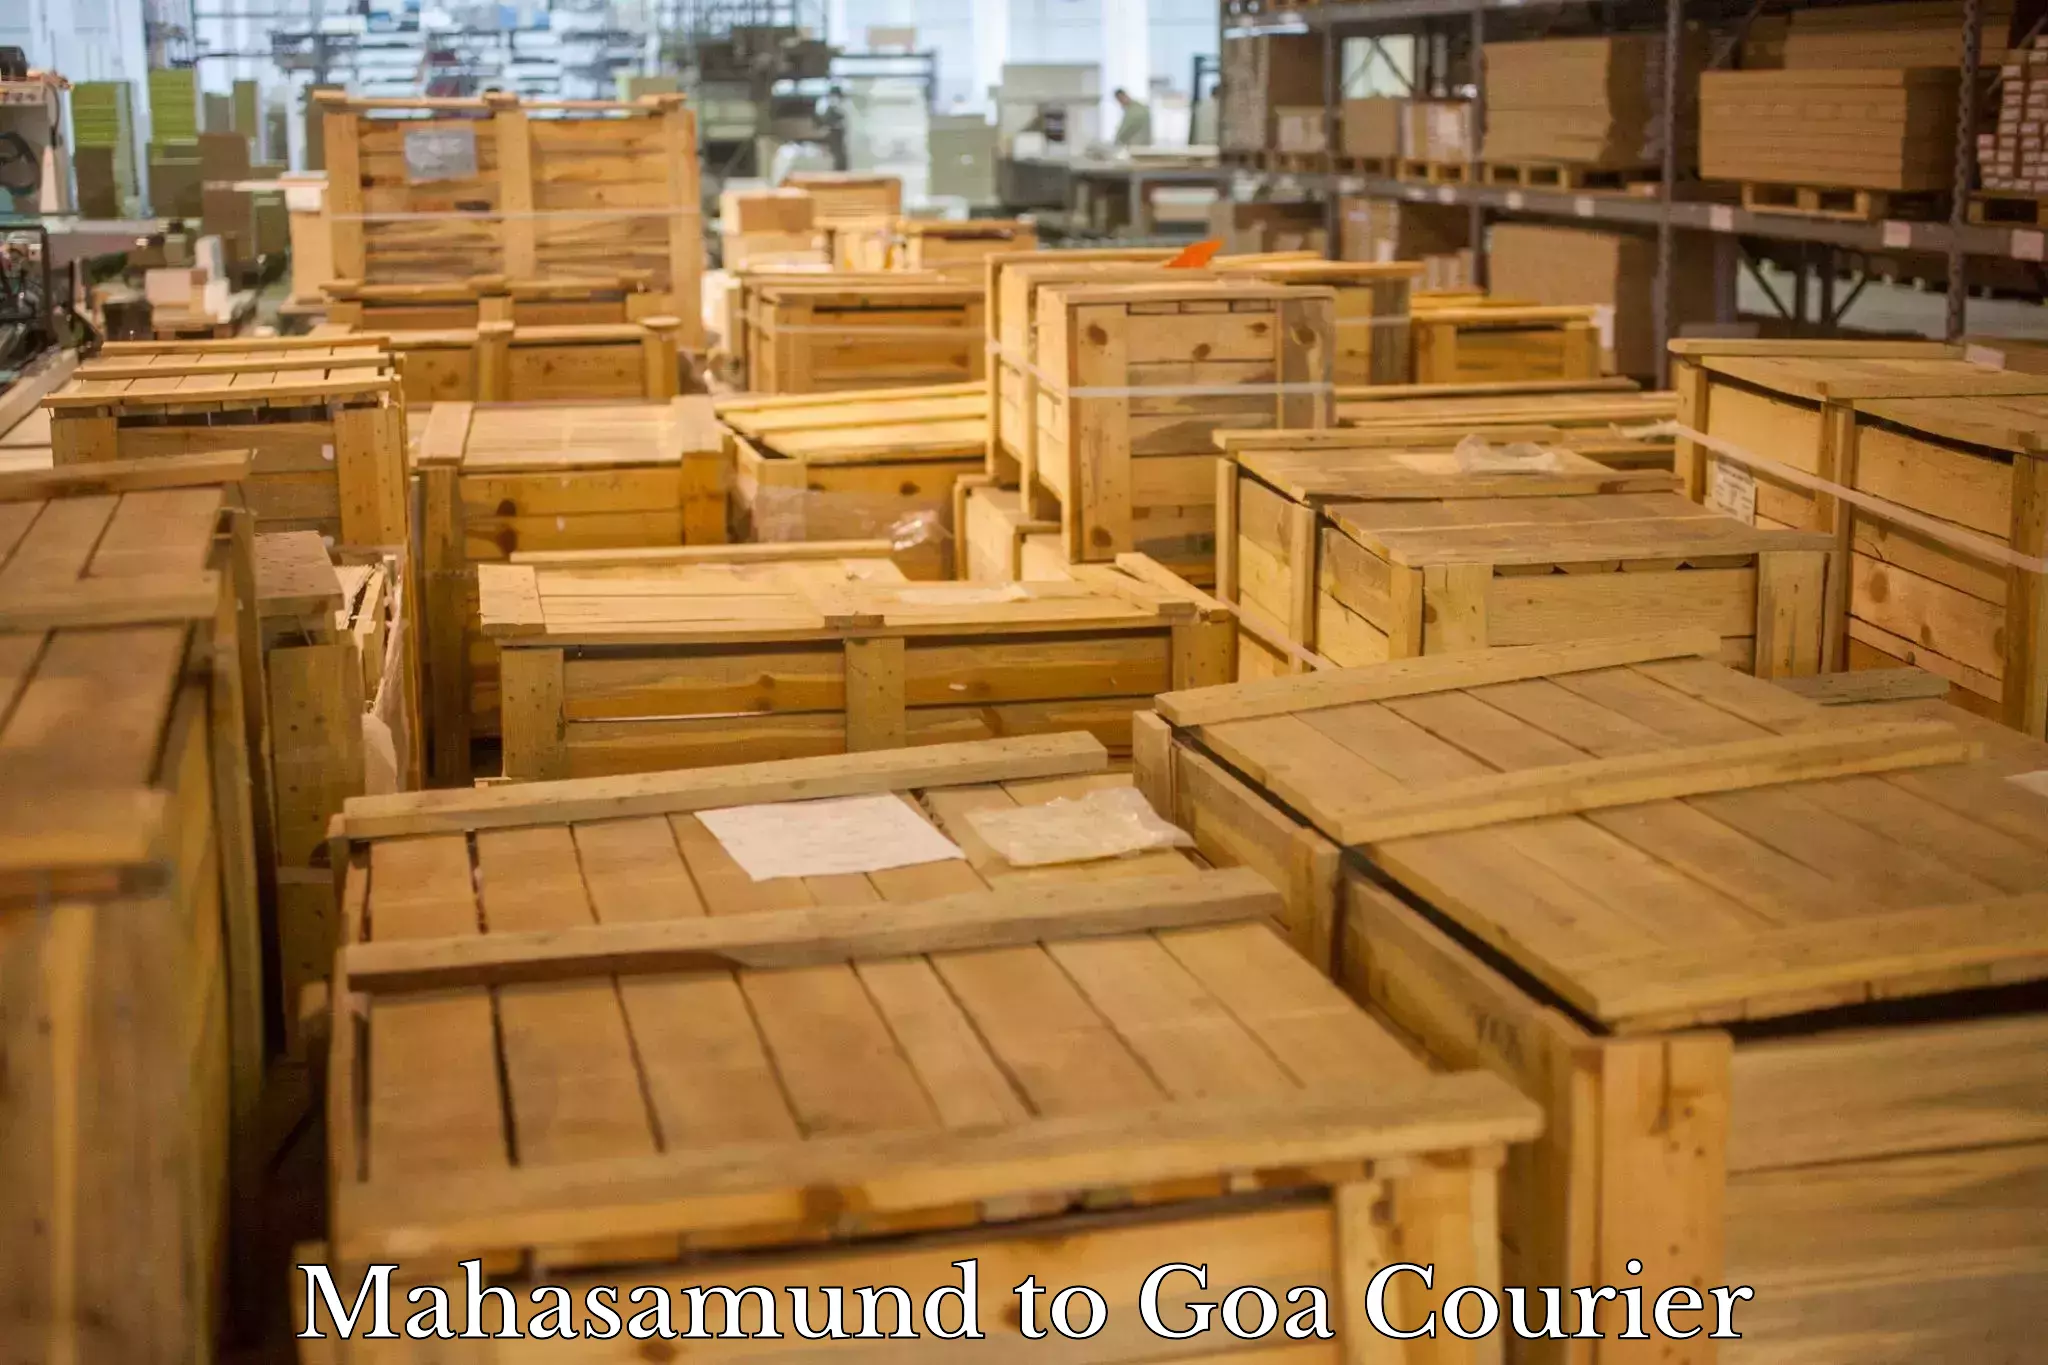 Express shipping Mahasamund to IIT Goa